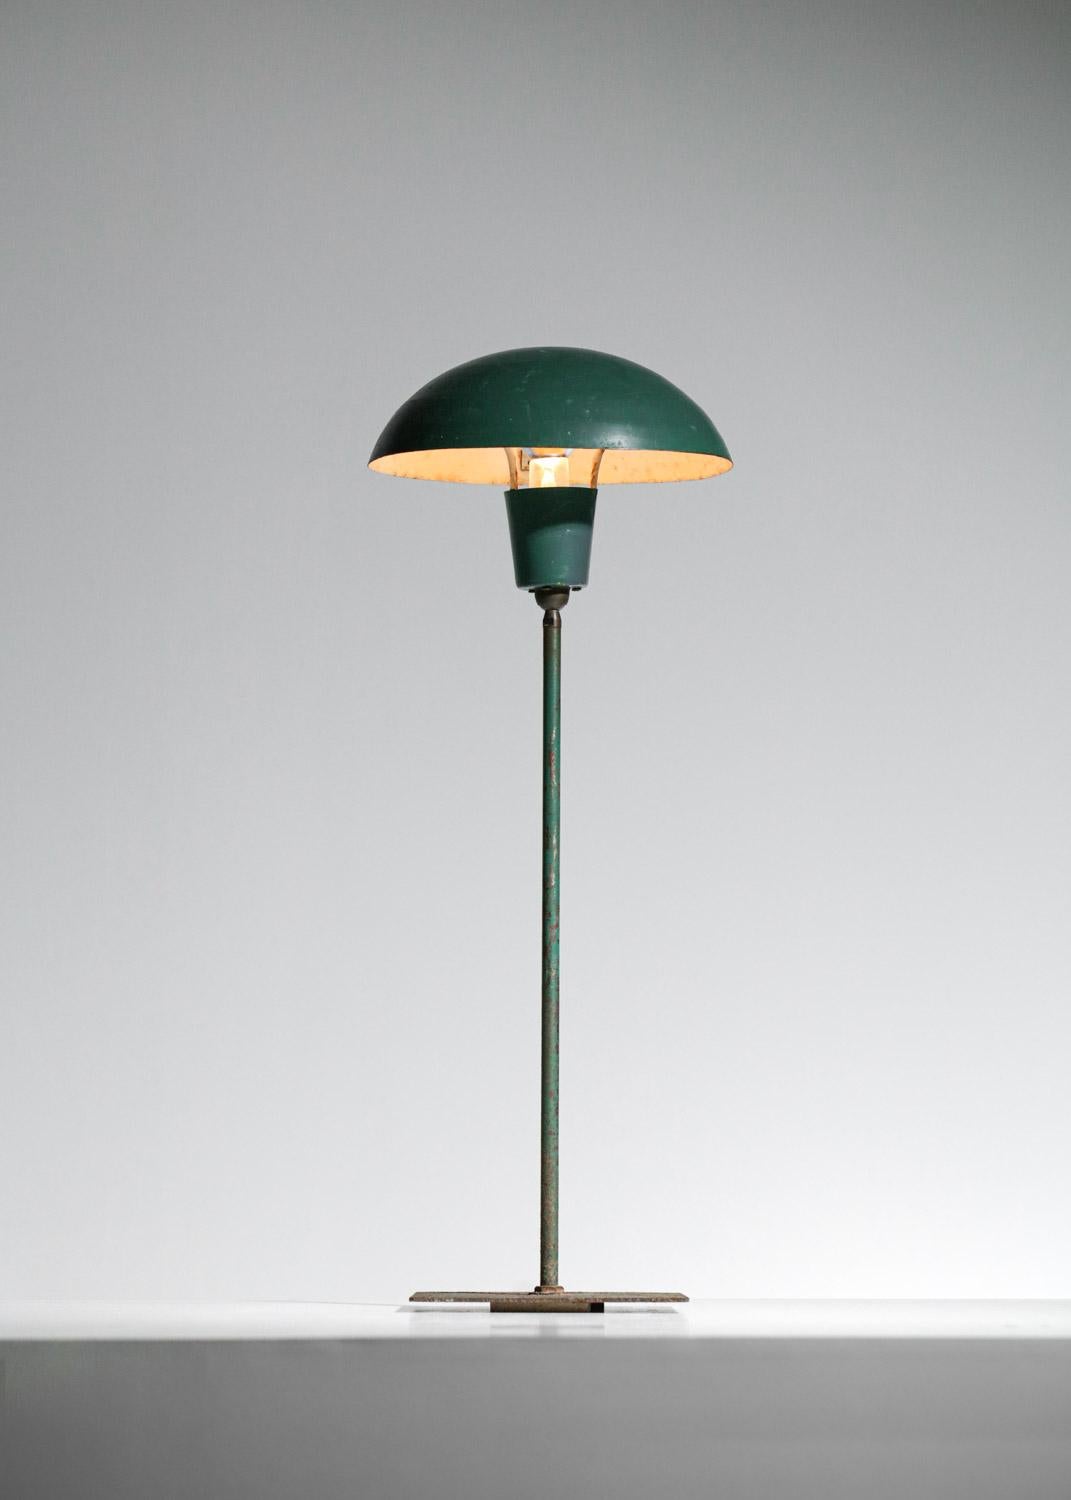 Table ou petit lampadaire d'extérieur de style industriel scandinave dans le style du travail de Poul Hennigsen datant des années 50. Structure de la base et de l'abat-jour en métal laqué vert foncé (peinture d'origine). Une articulation à rotule